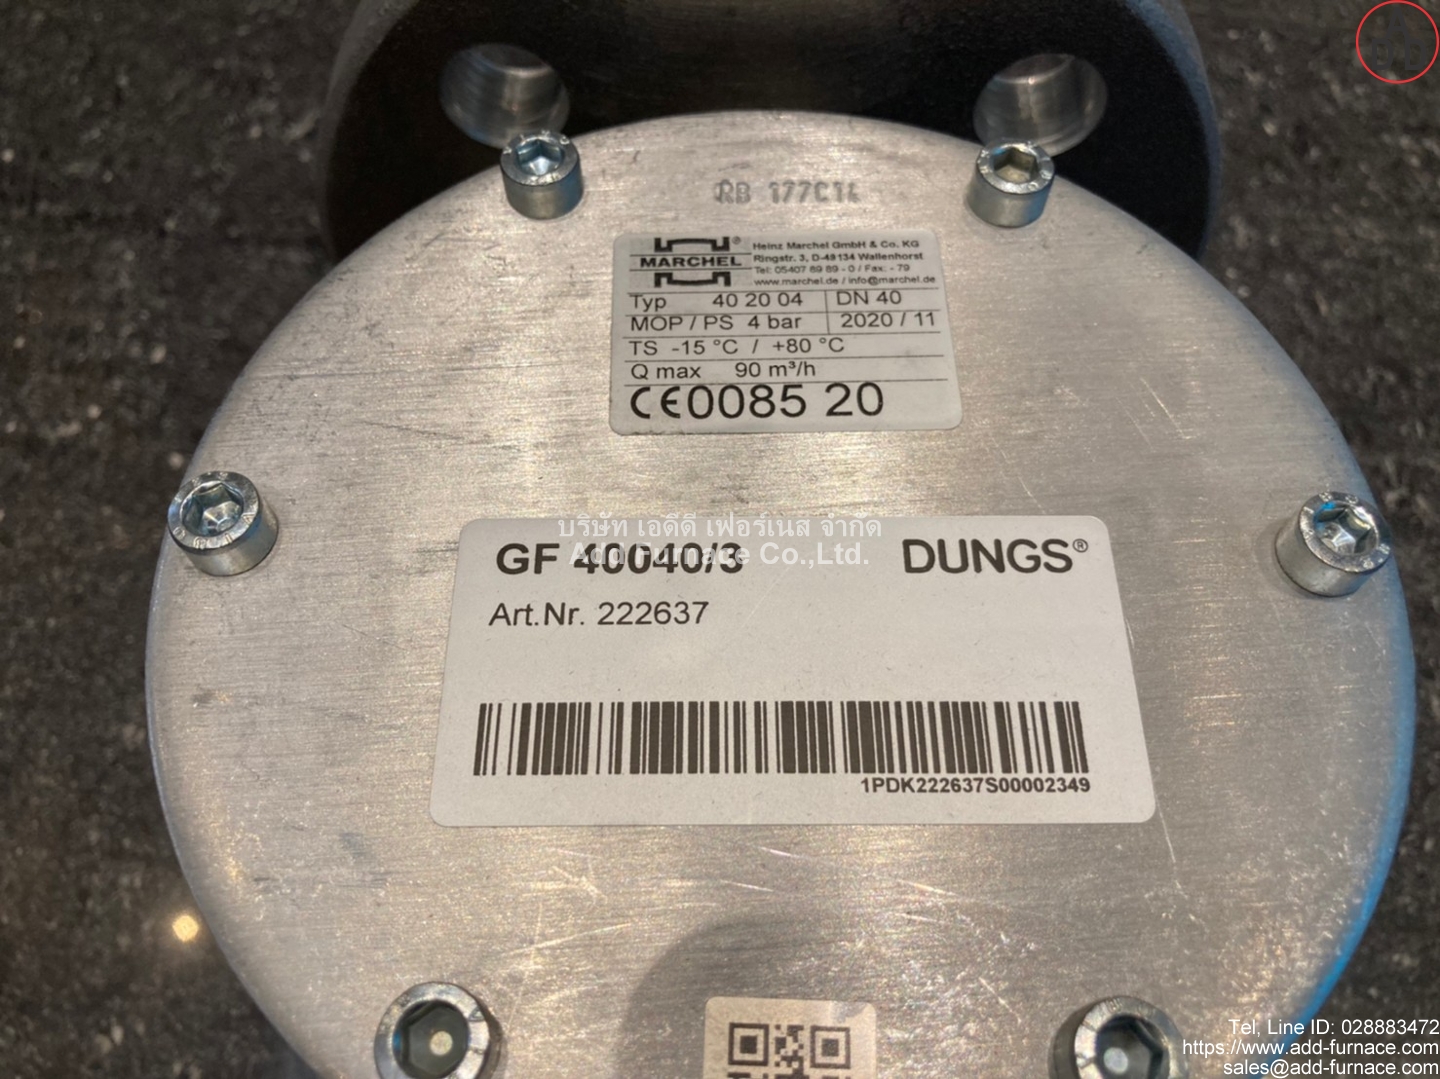 Dungs GF-40040/3 (12)